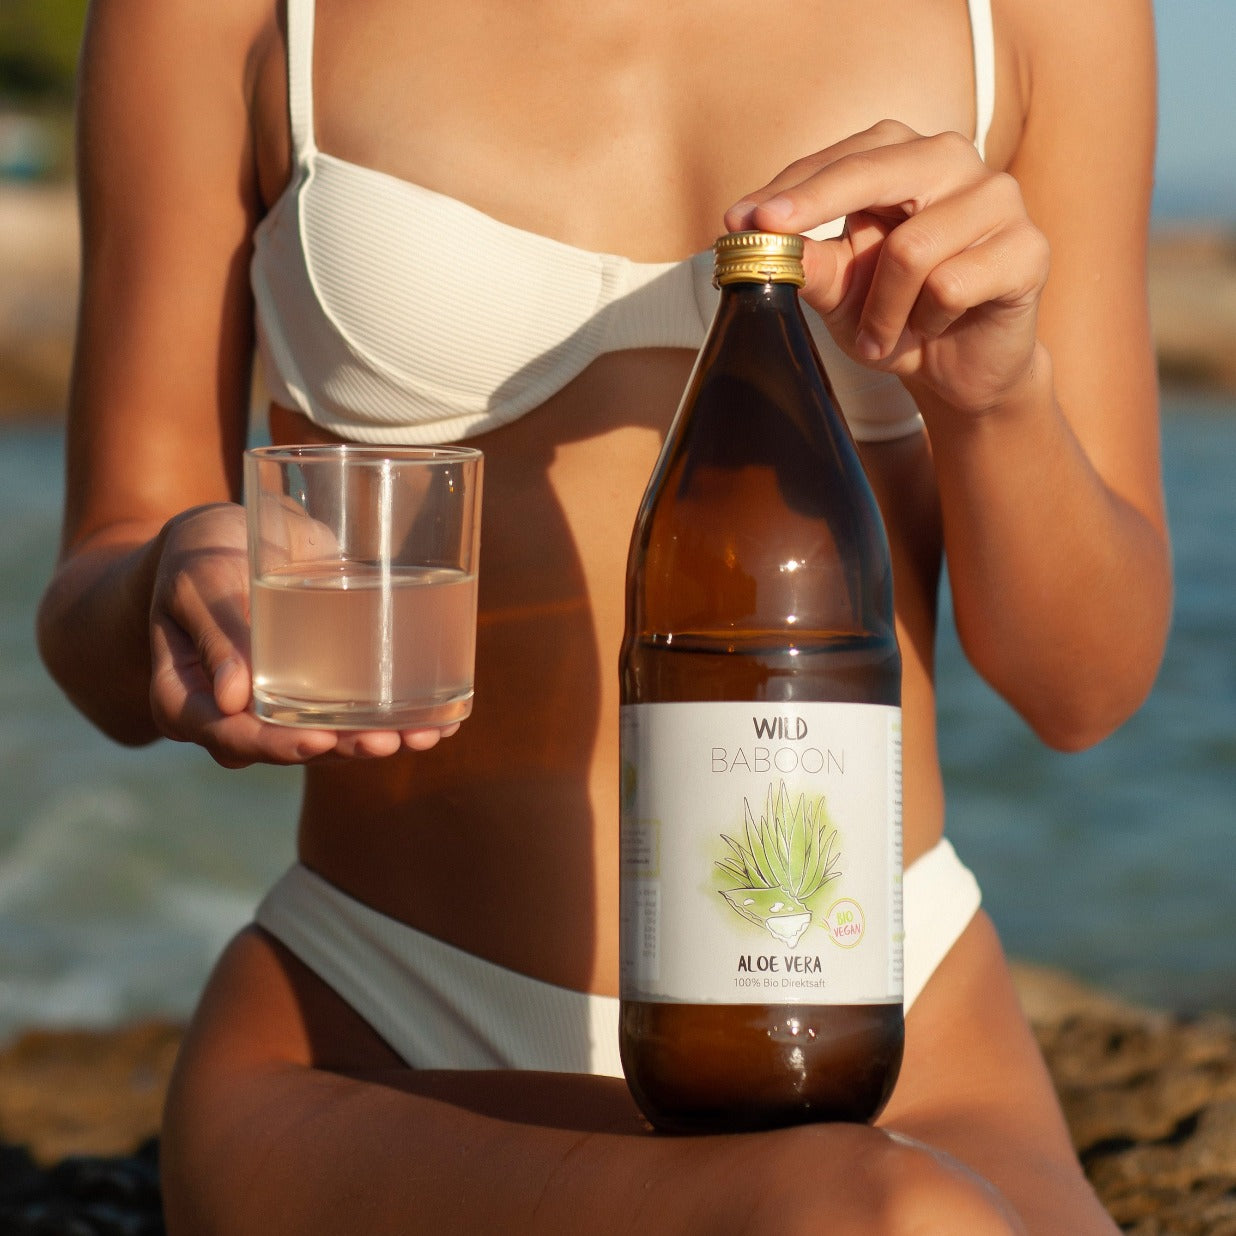 aloe vera gel trinkt Frau im Bikini und hält Wild Baboon Flasche in der Hand